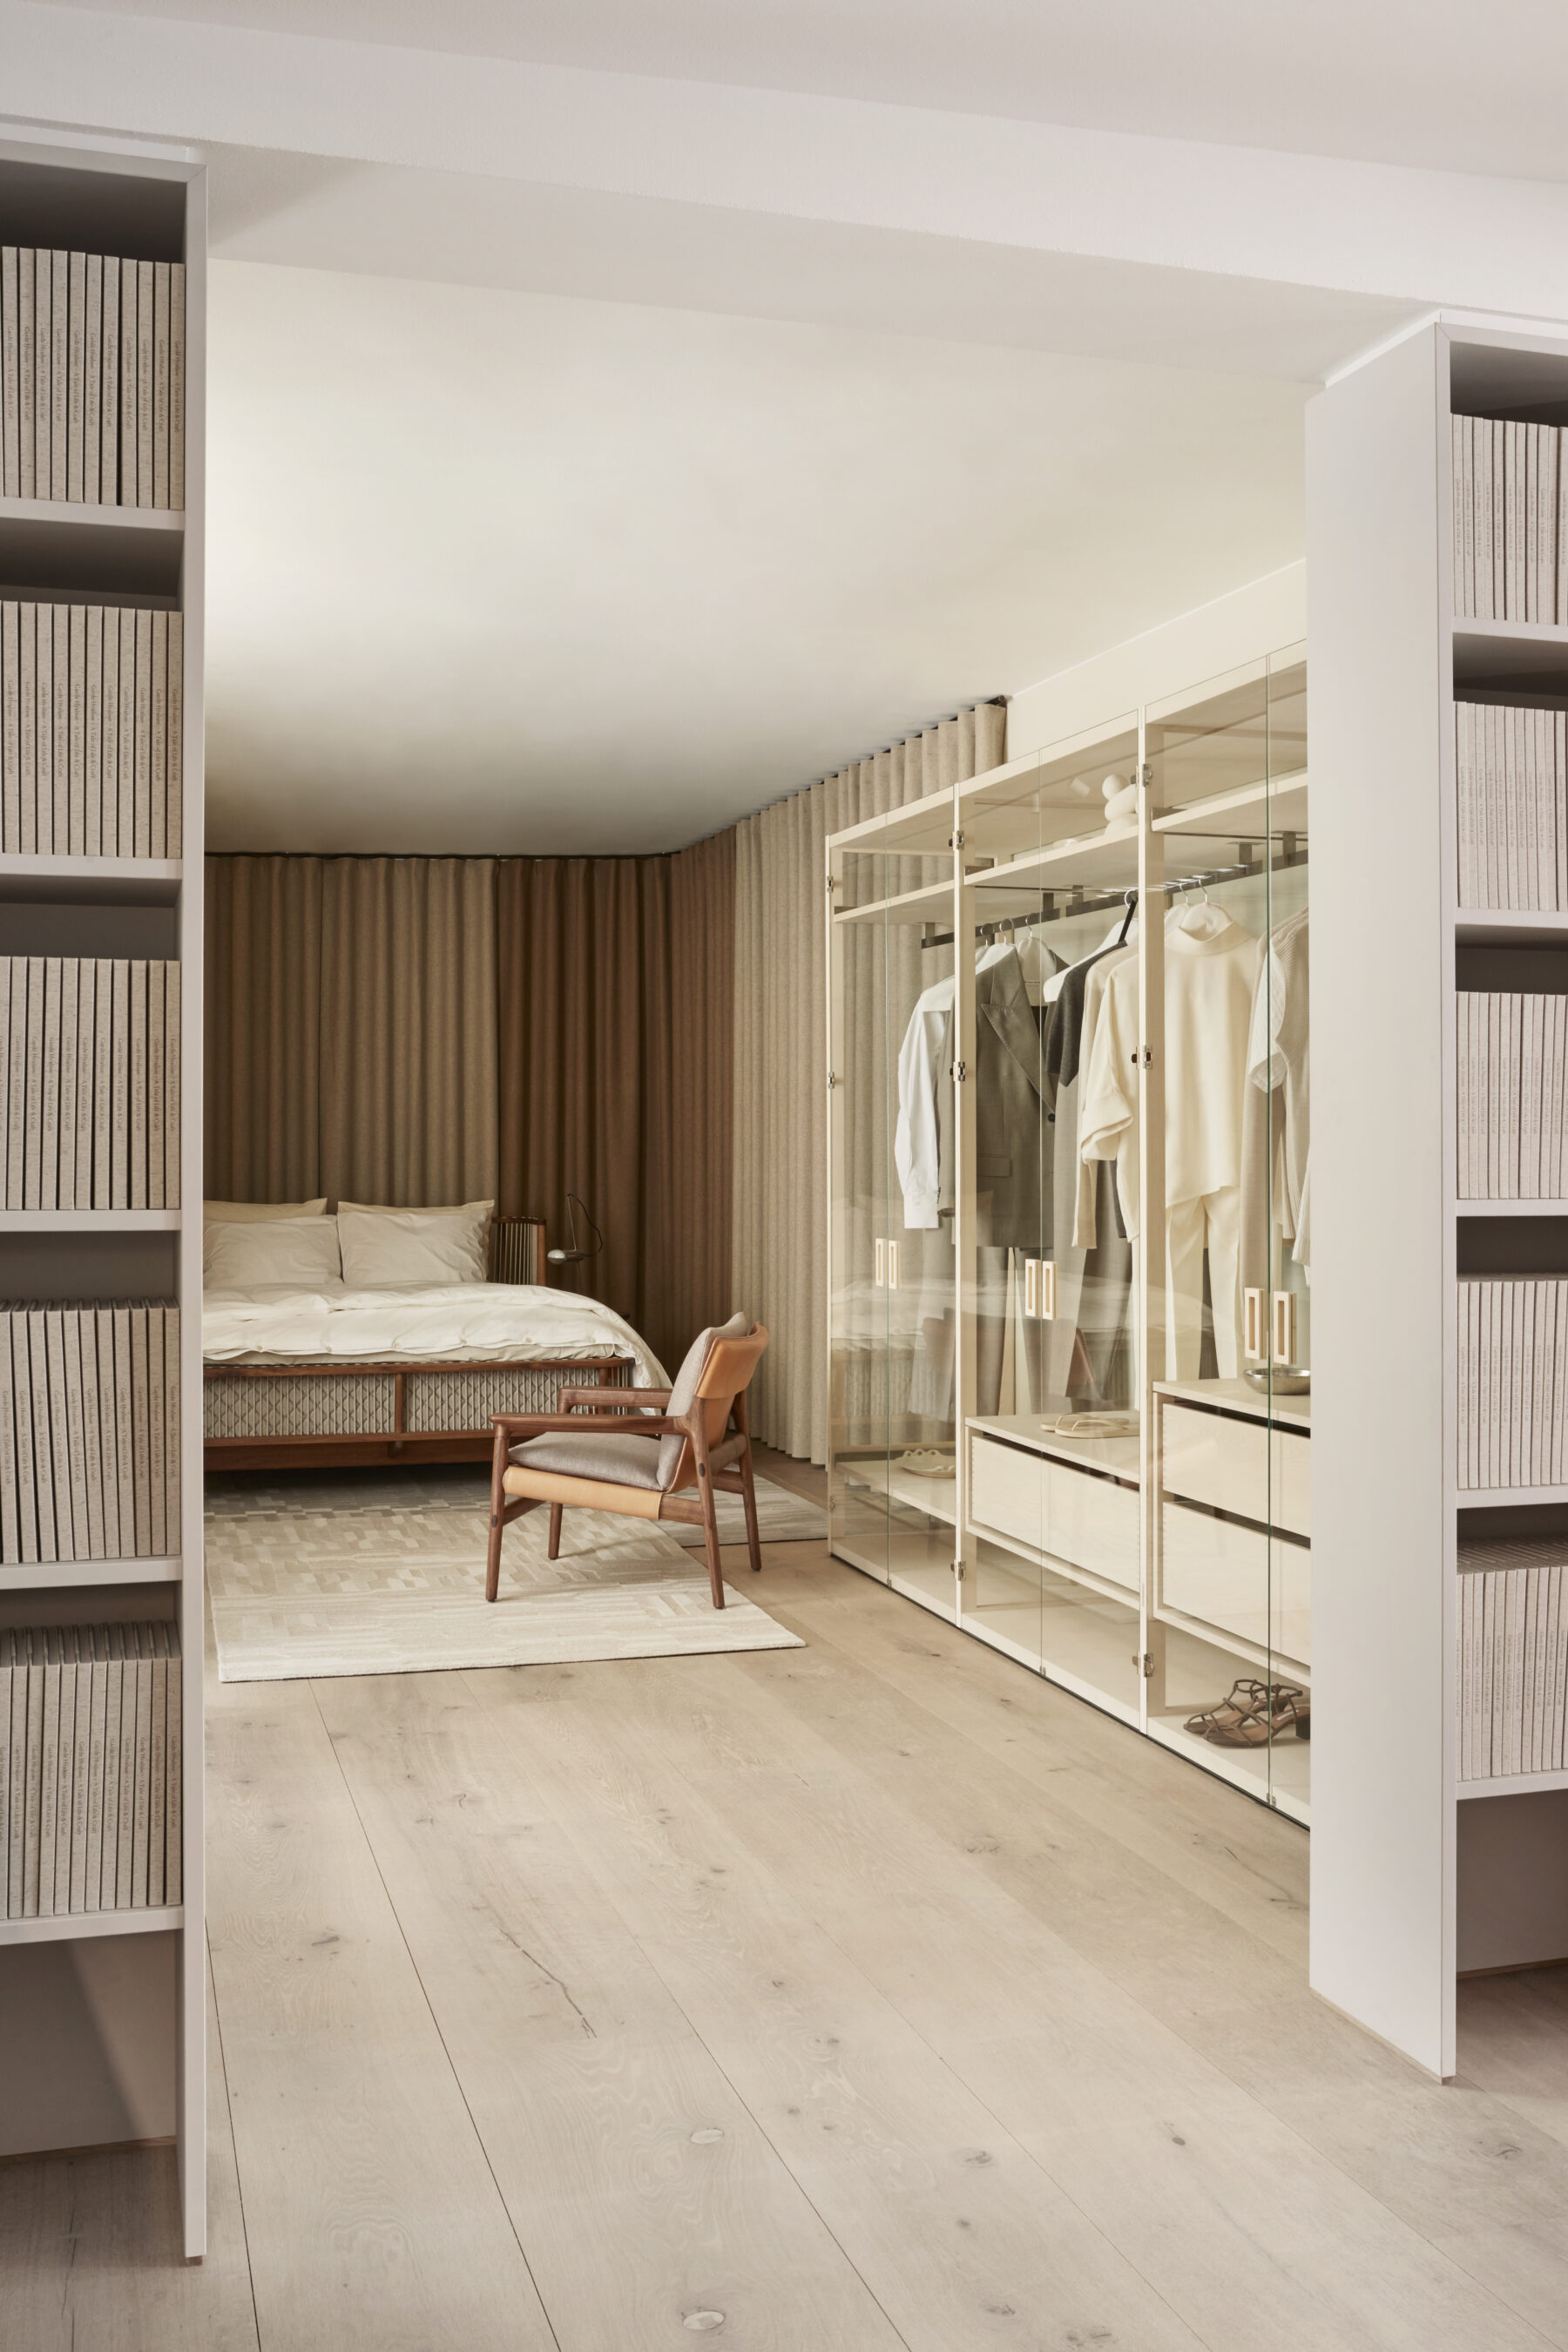 Von zwei Bücherregalen gesäumtes Schlafzimmer Interieur von Garde Hvalsøe mit einem Schranksystem aus Holz mit gläsernen Fronten auf der rechten Seite, davor ein Holzsessel, im Hintergrund ein elegantes Doppelbett aus Holz.